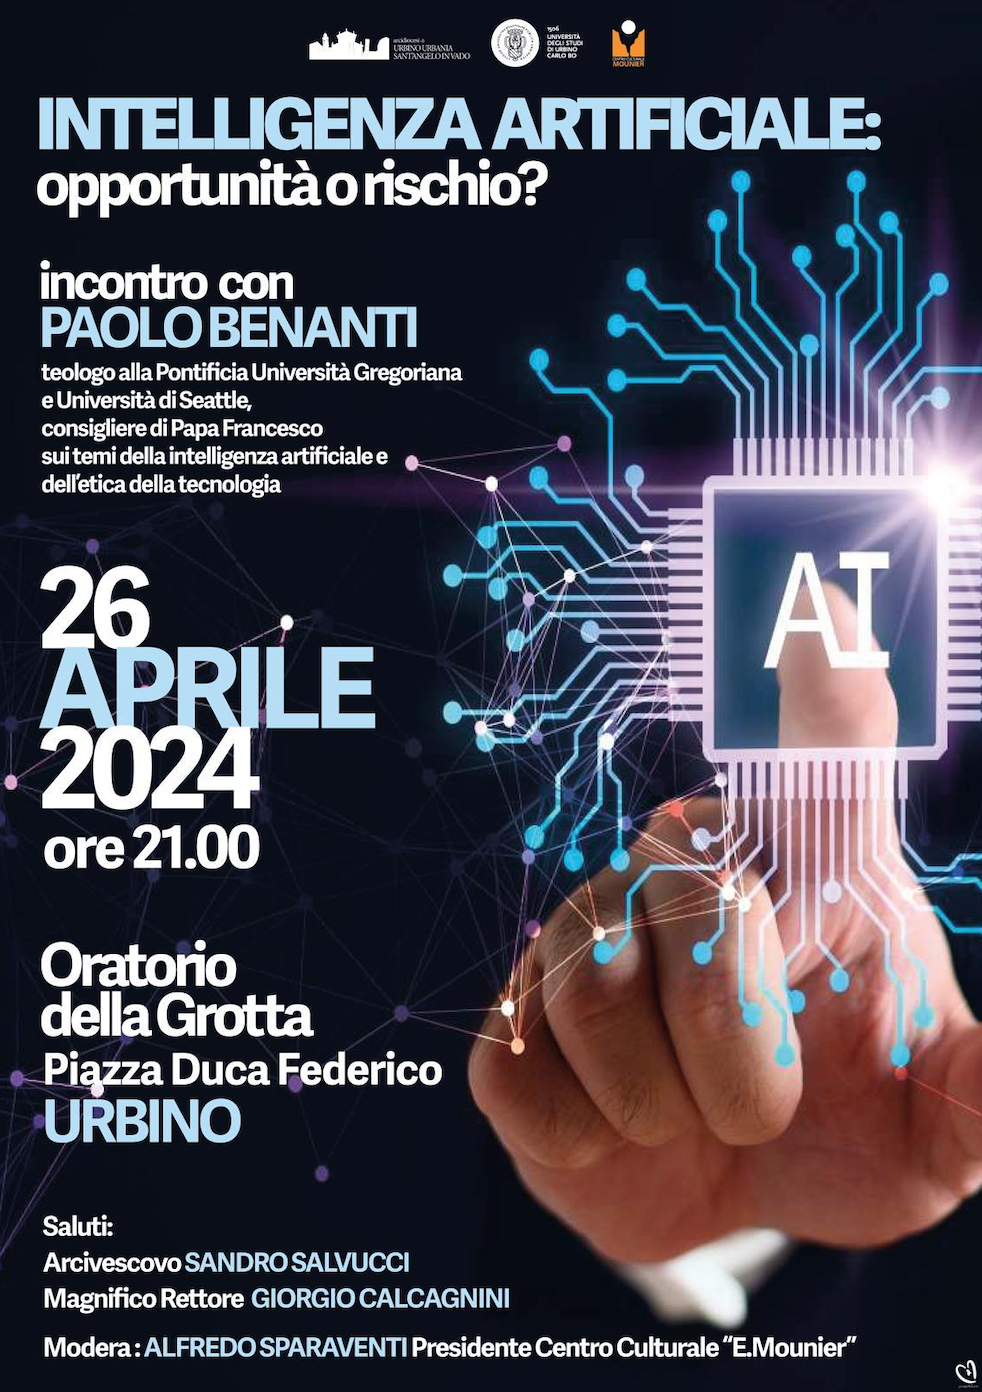 Featured image for “Urbino: Intelligenza artificiale, opportunità o rischio?”